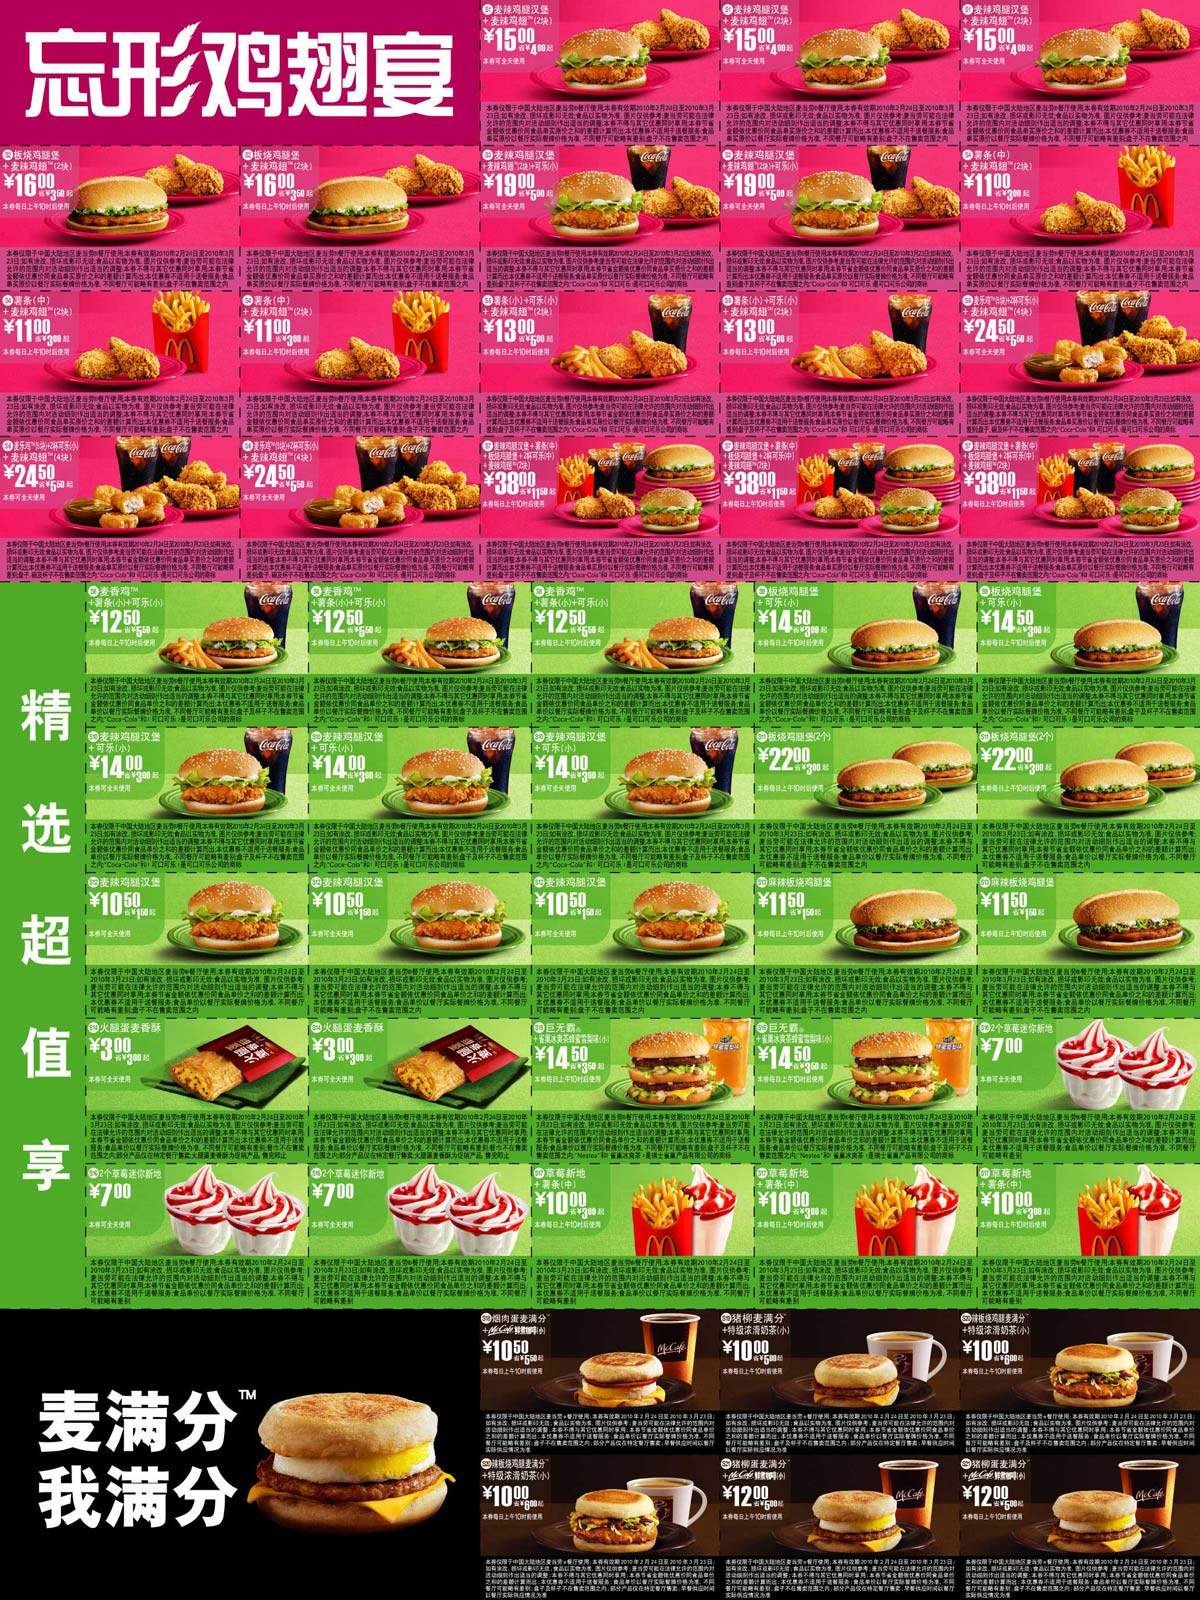 麦当劳优惠券:2010年2月3月麦当劳电子优惠券整张打印版本 有效期2010年2月24日-2010年3月23日 使用范围:麦当劳中国大陆餐厅